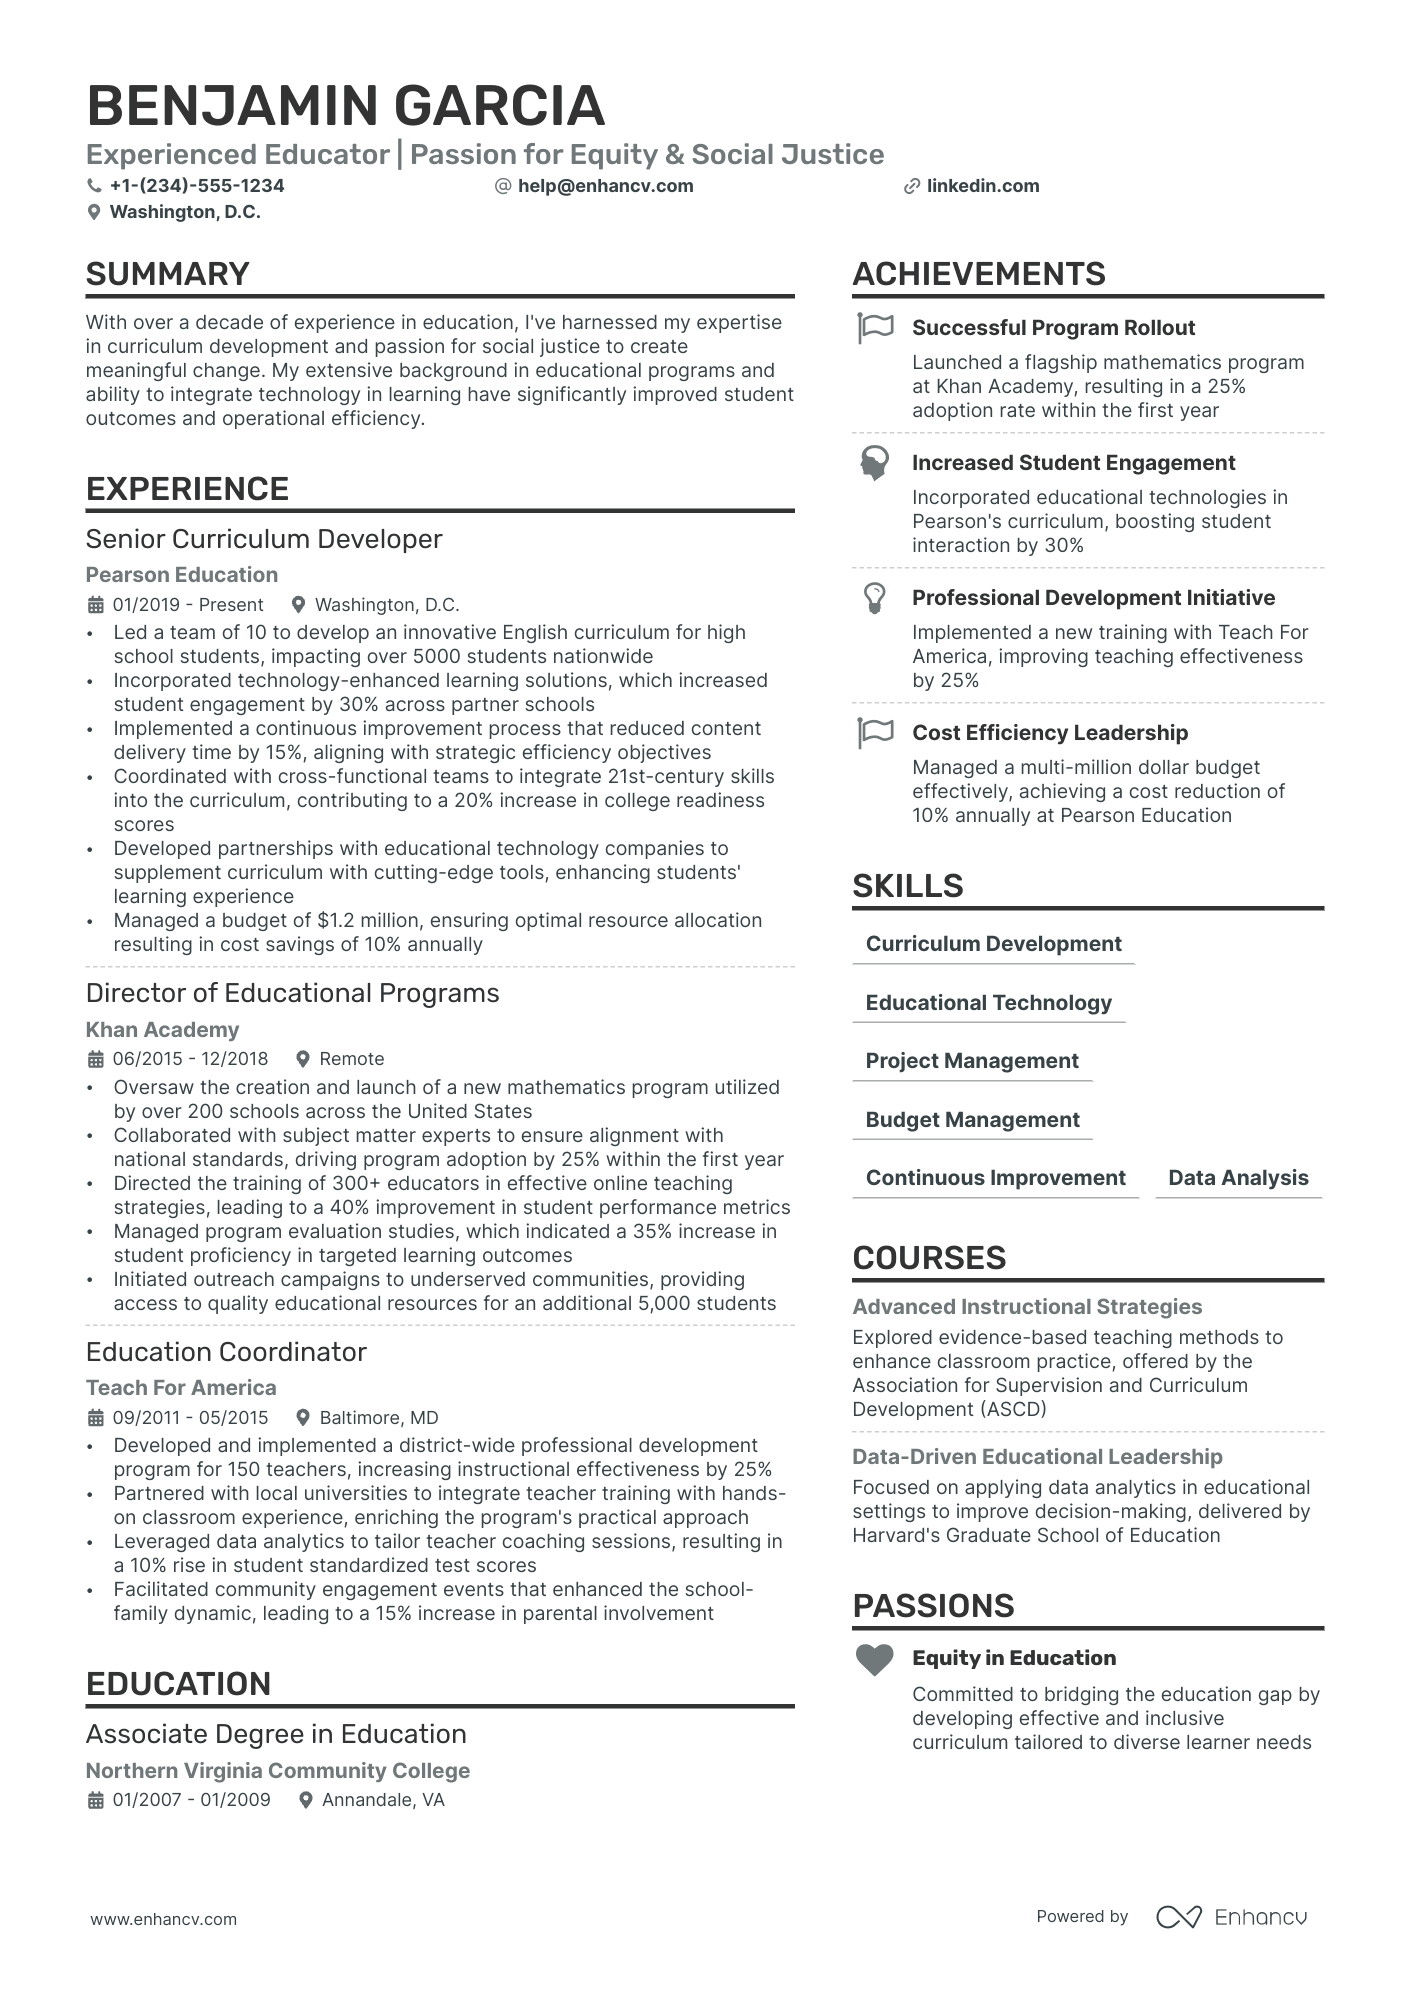 make resume for teacher job